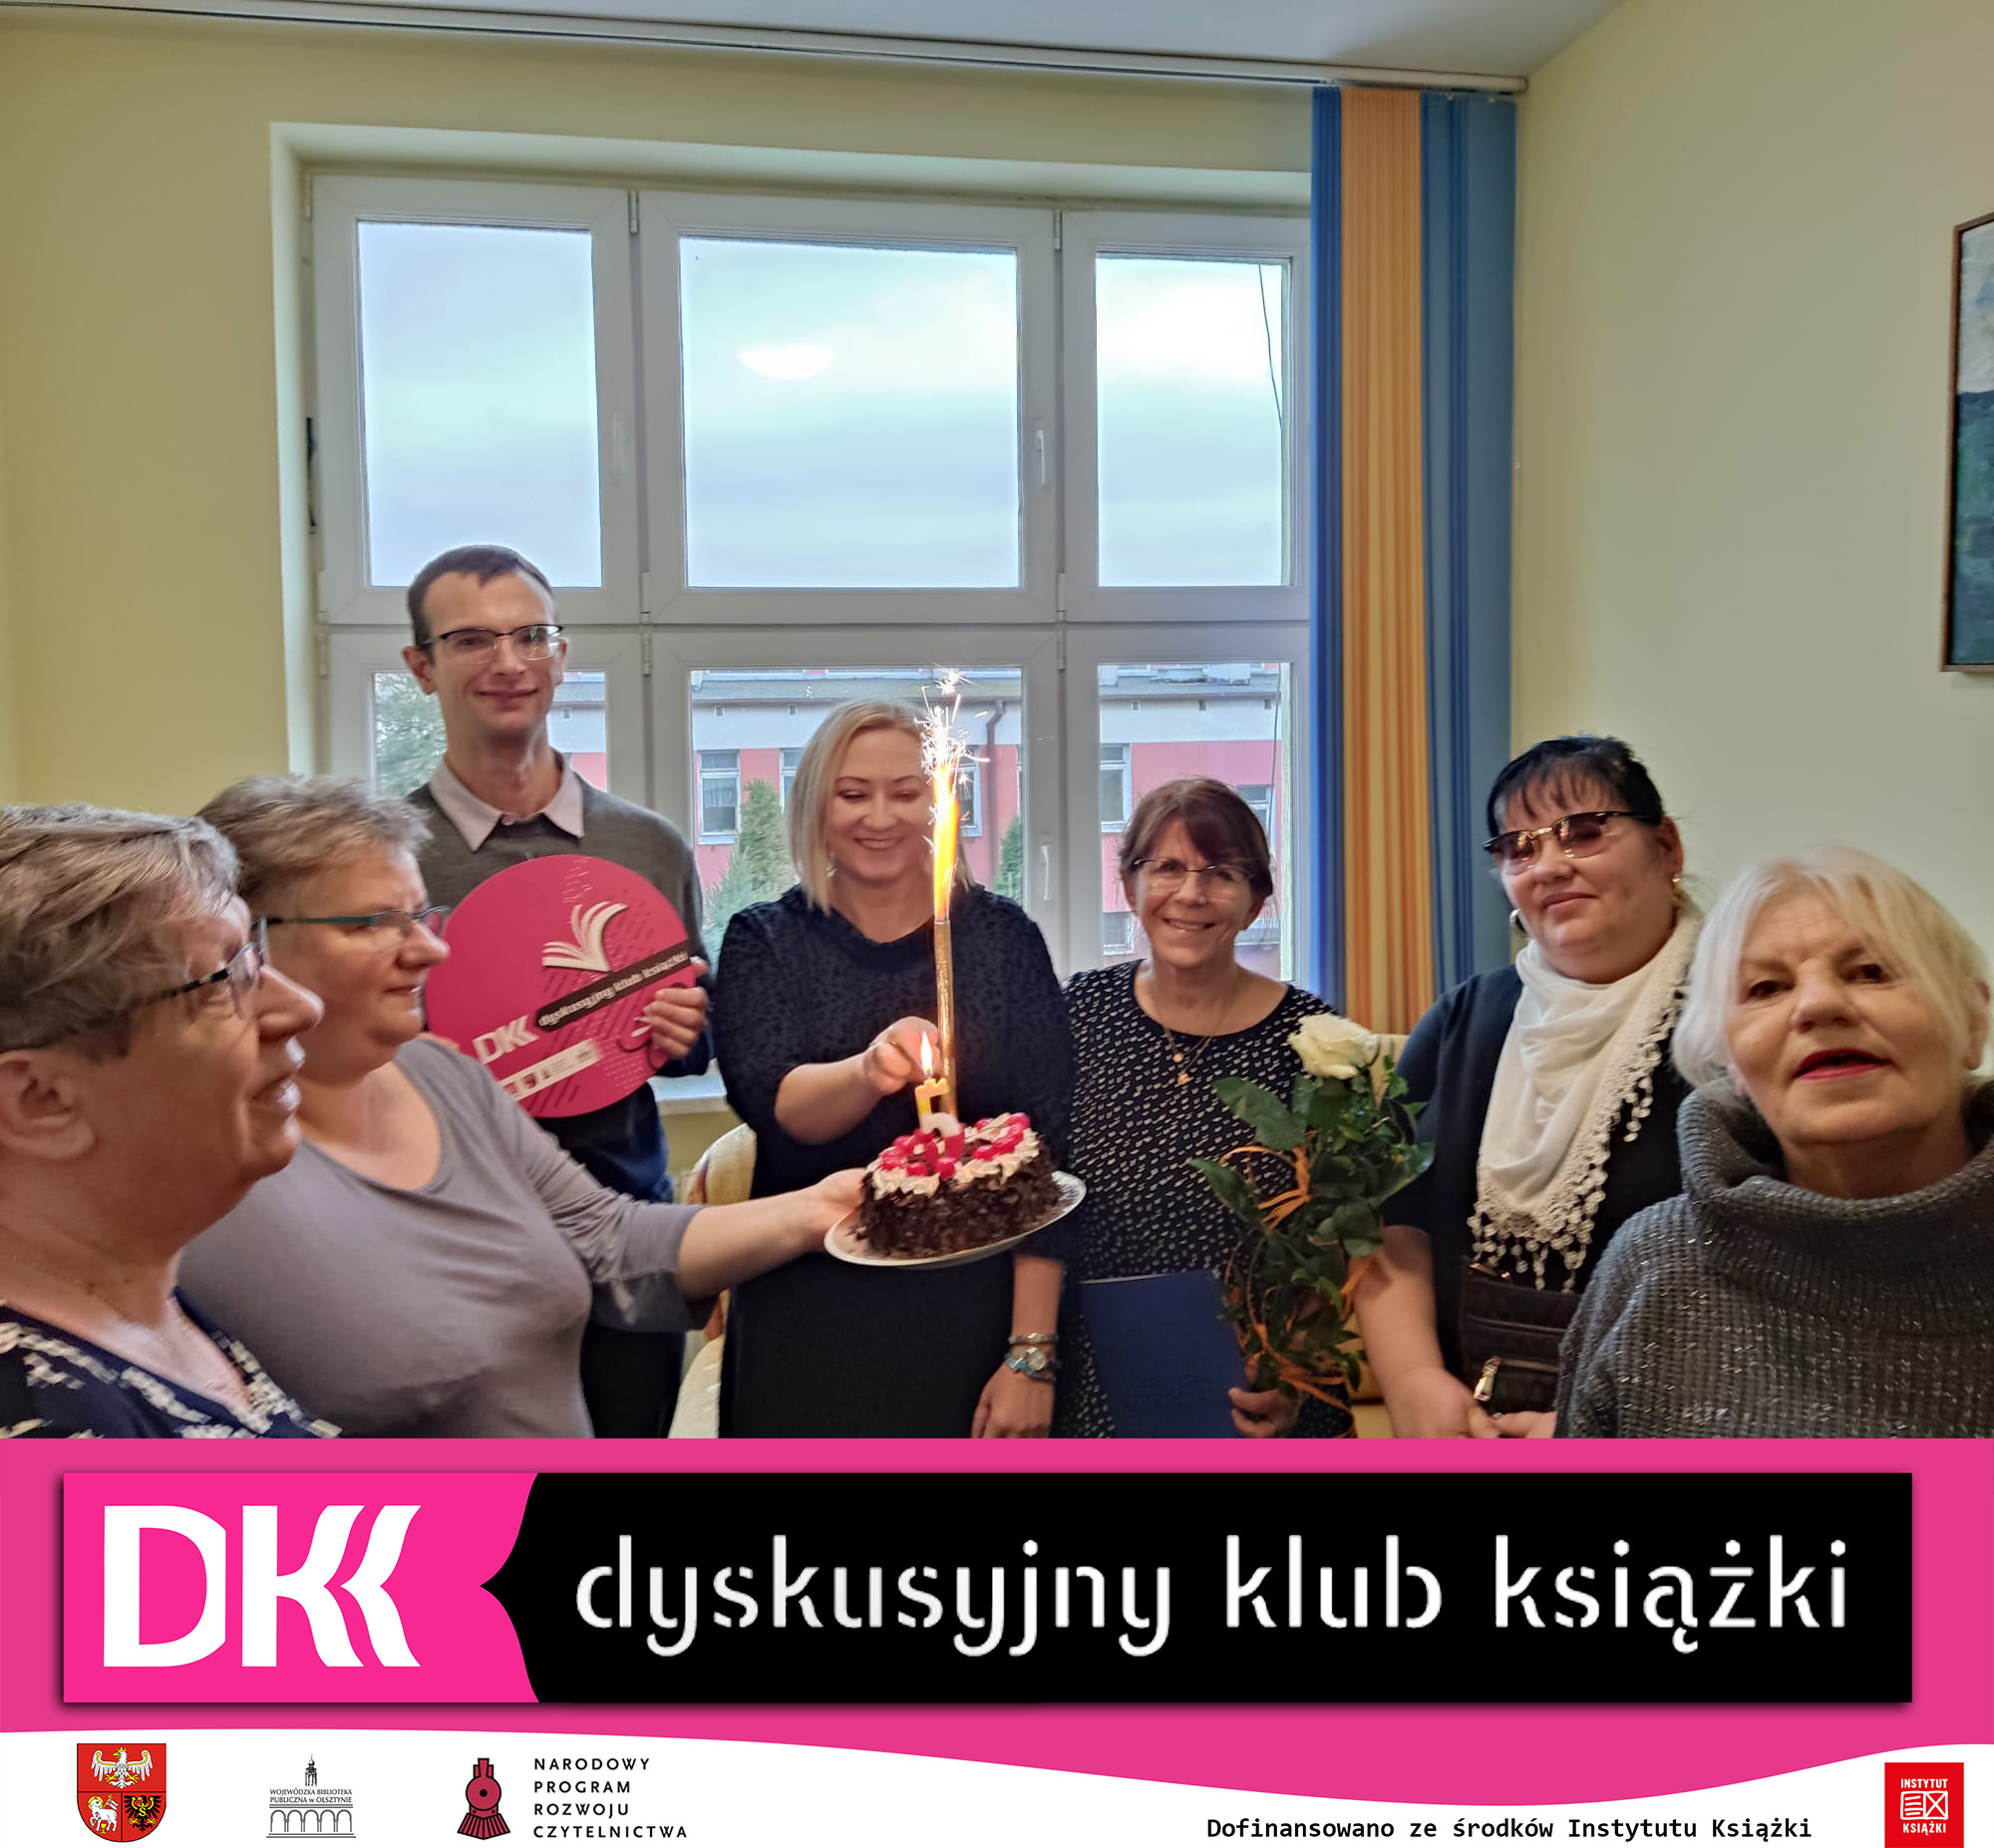 6 kobiet i jeden mężczyzna, jedna z kobiet trzyma w ręku tort ze świeczką w kształcie cyfry 5 i zimnym ogniem, inna kobieta trzyma w ręku kwiaty, na dole zdjęcia widnieje logo klubu DKK